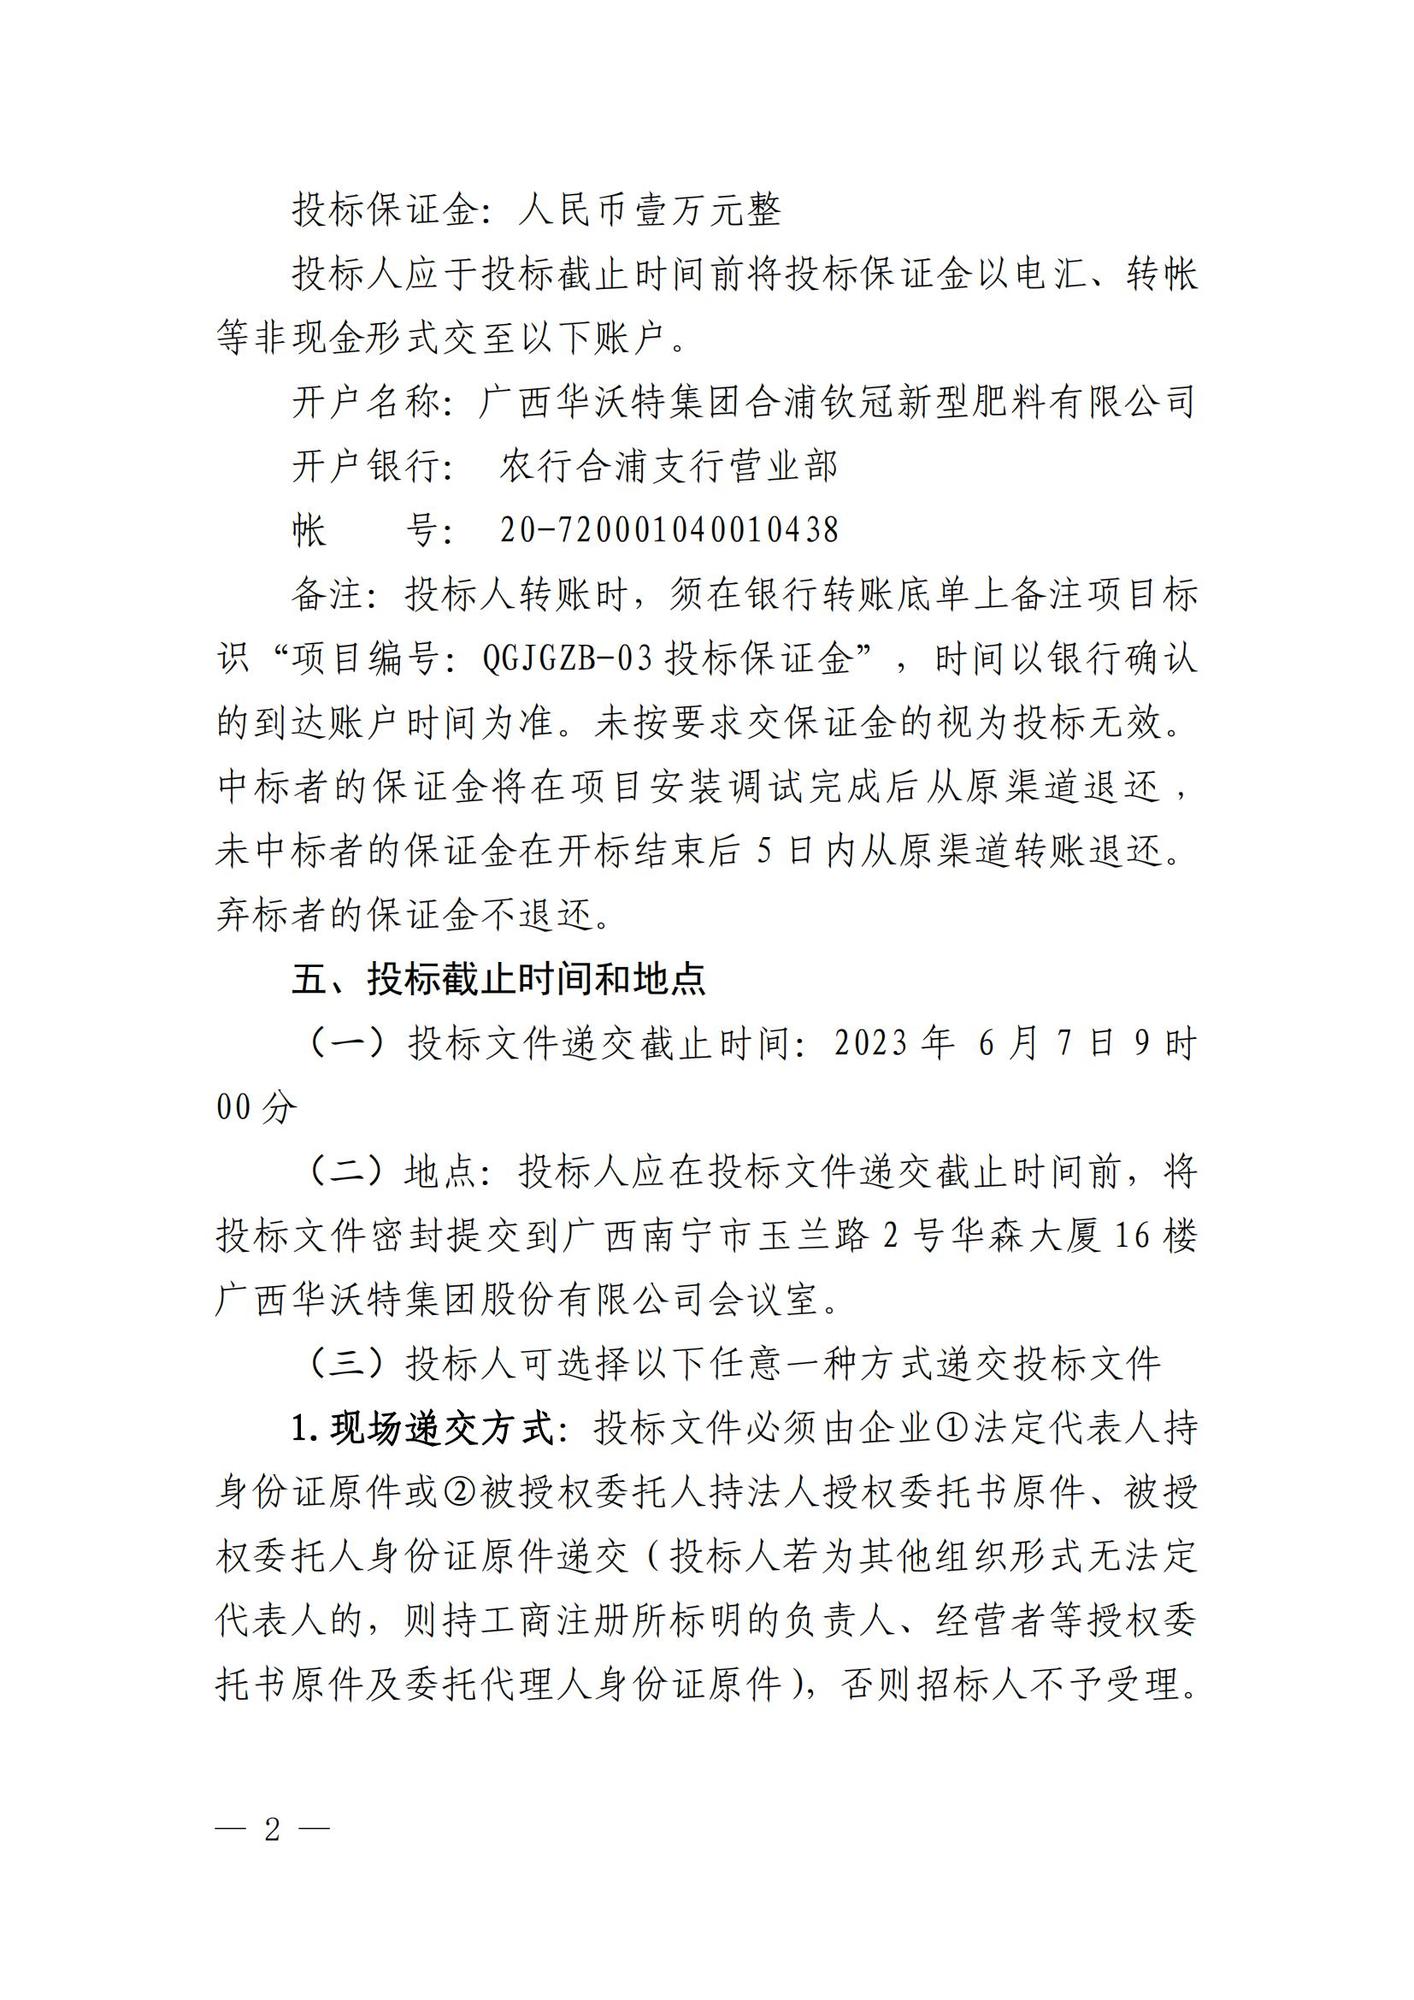 广西华沃特集团股份有限公司自动码跺系统公开招标公告_01.jpg